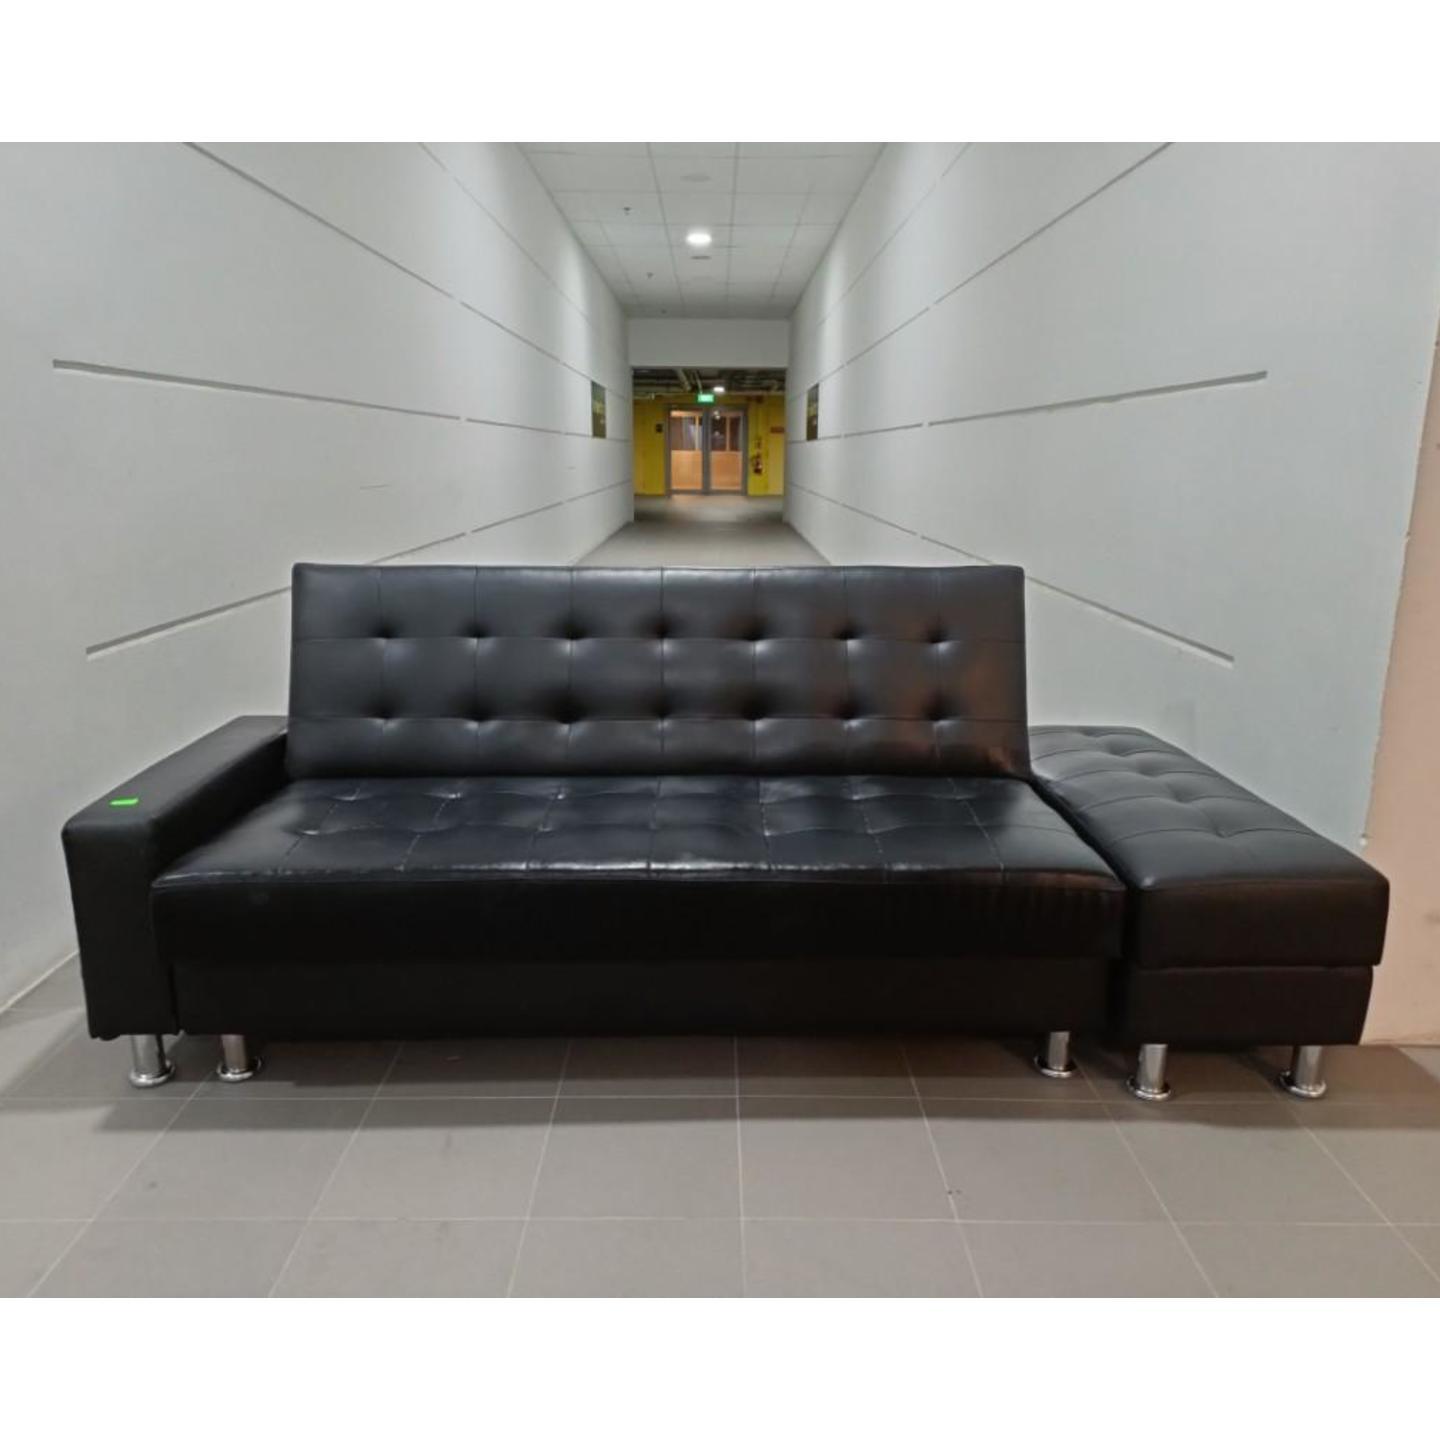 EVOCA Multi Storage Sofa Bed in BLACK